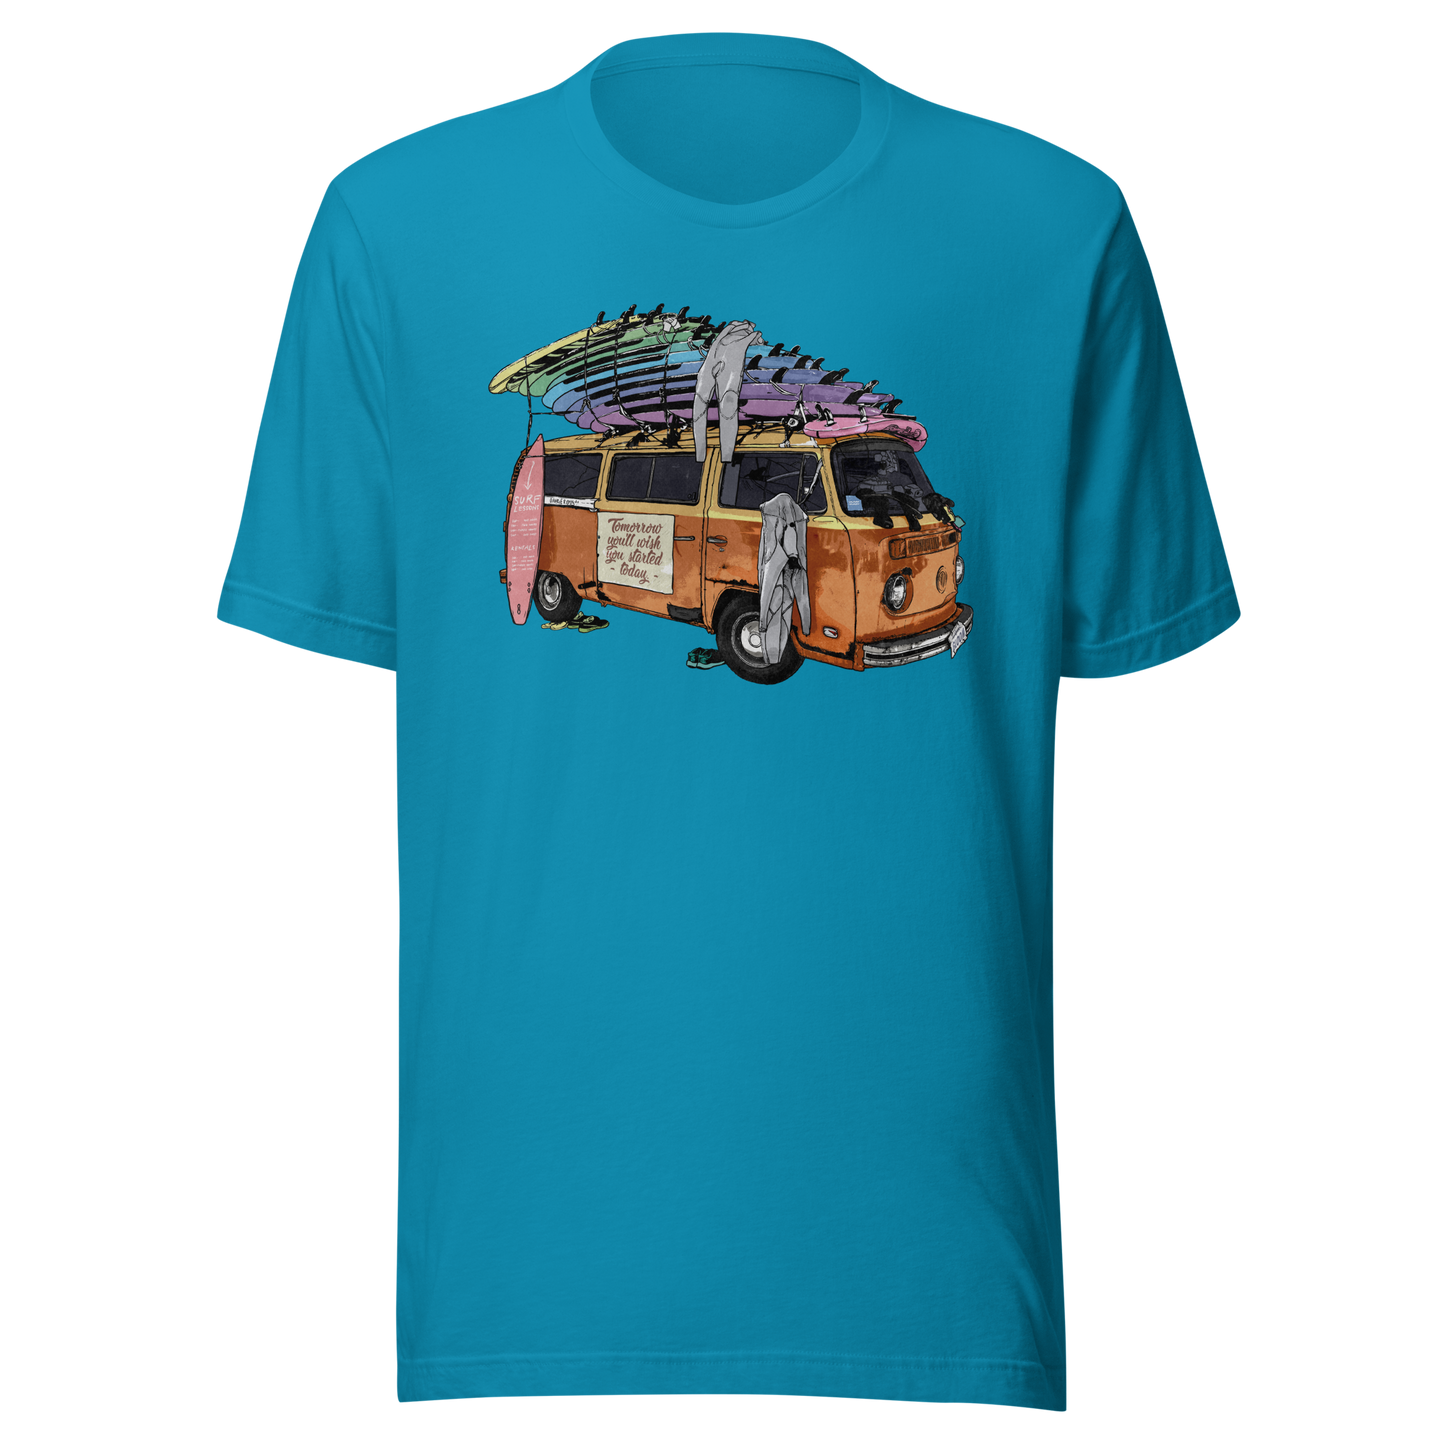 Surf & Turf T-Shirt